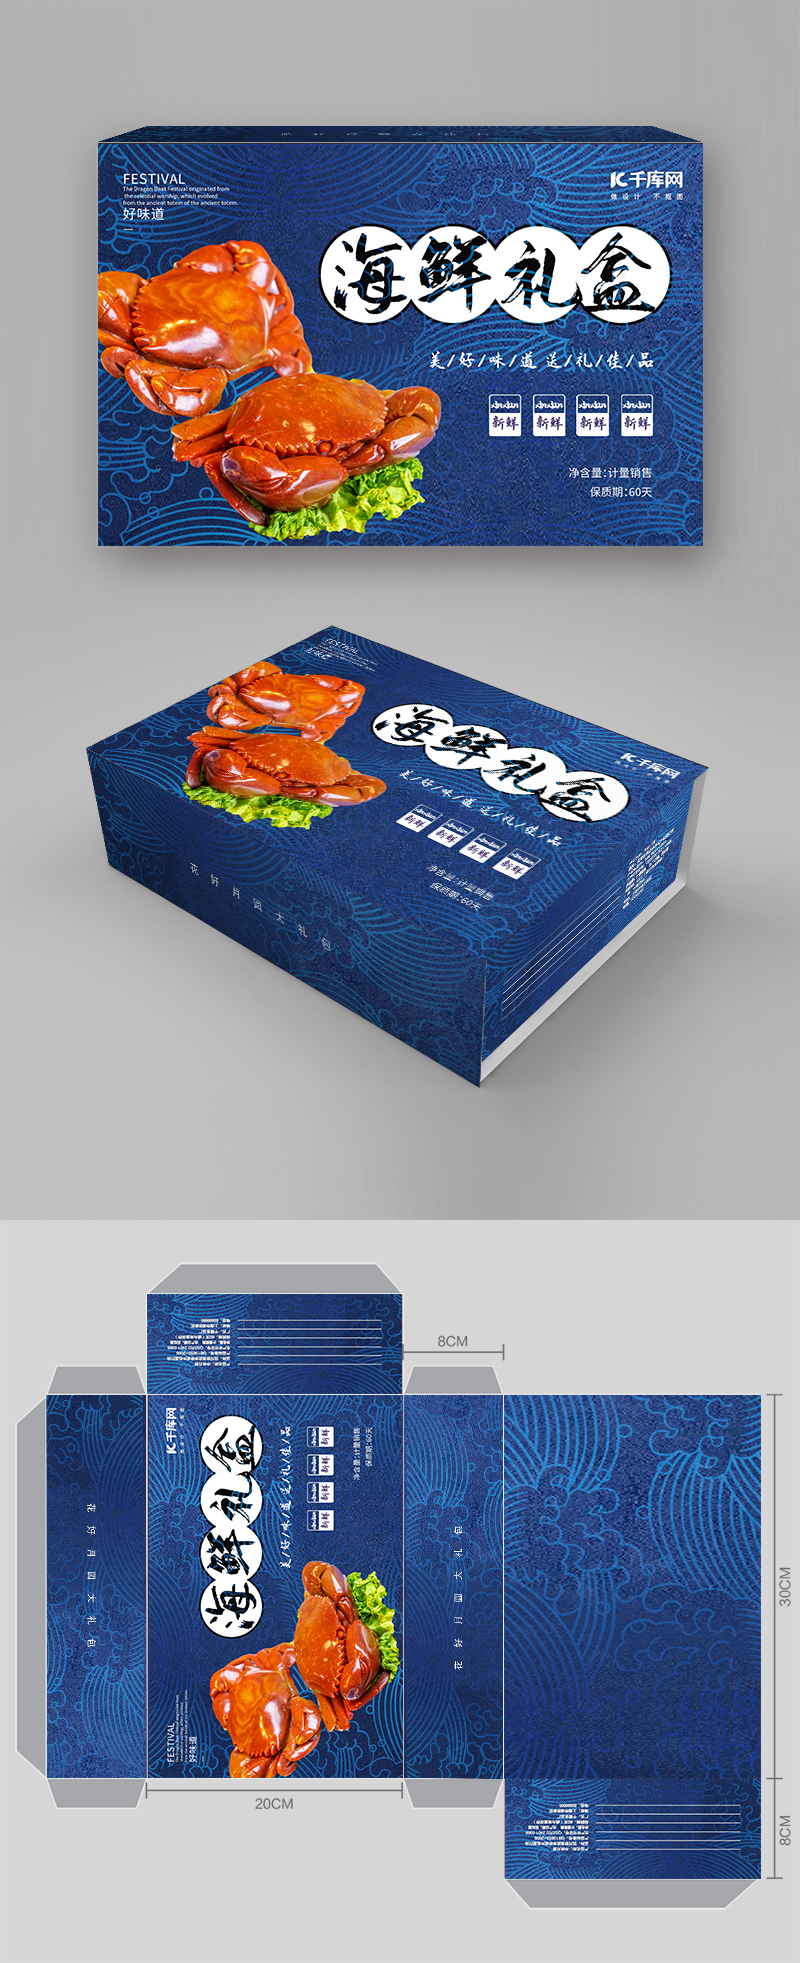 大闸蟹礼盒版式设计蓝色国潮包装图片